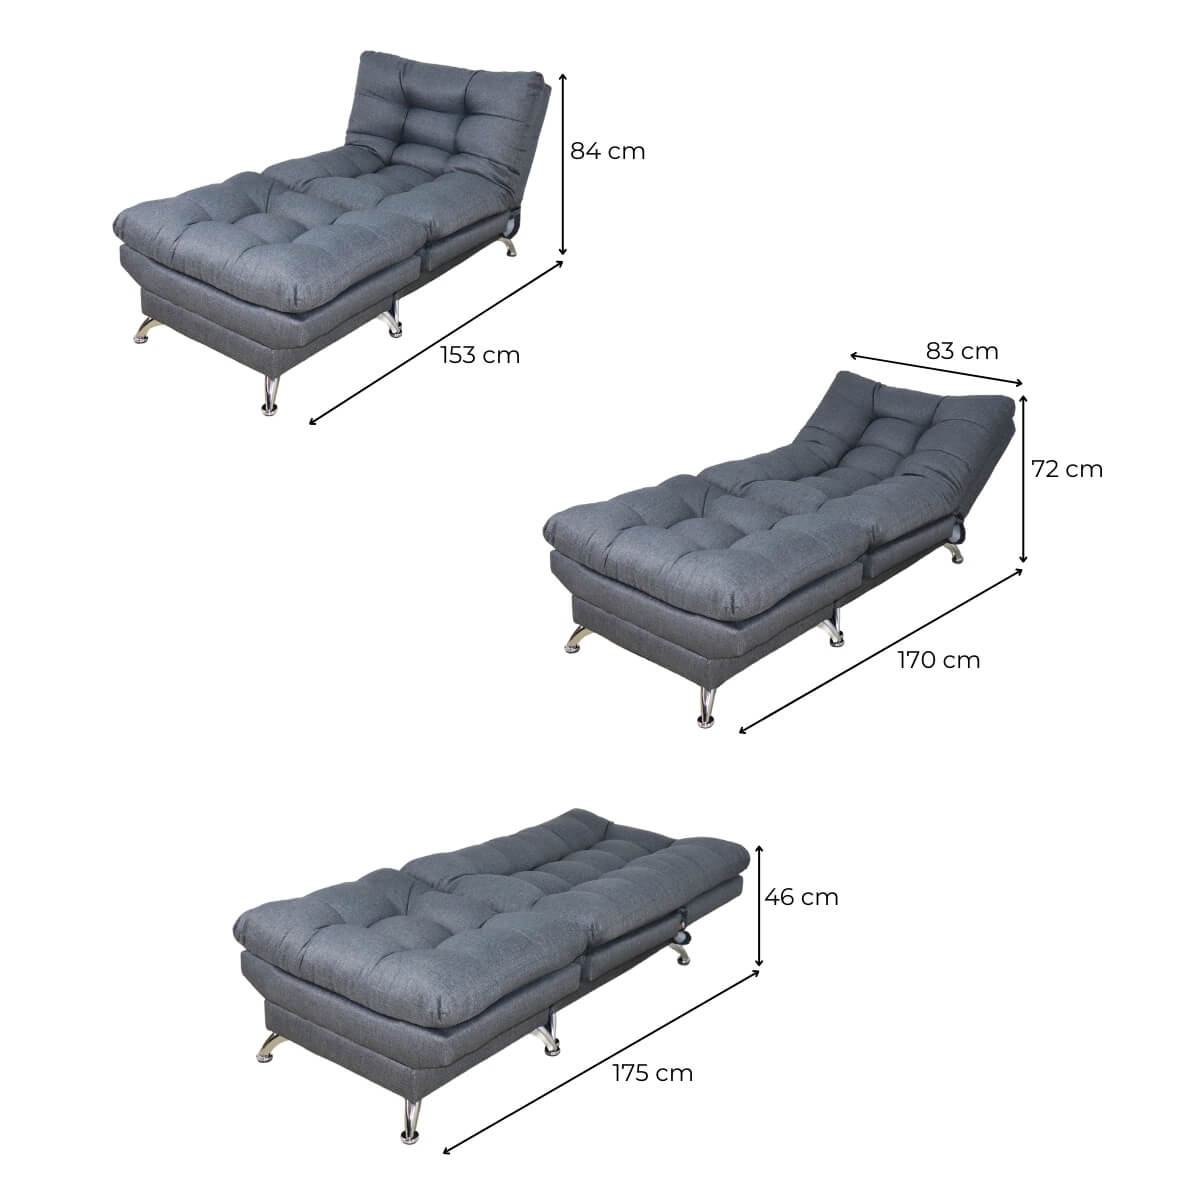 medidas de sillón individual gris donde comprar cerca de mi norval #color_oxford